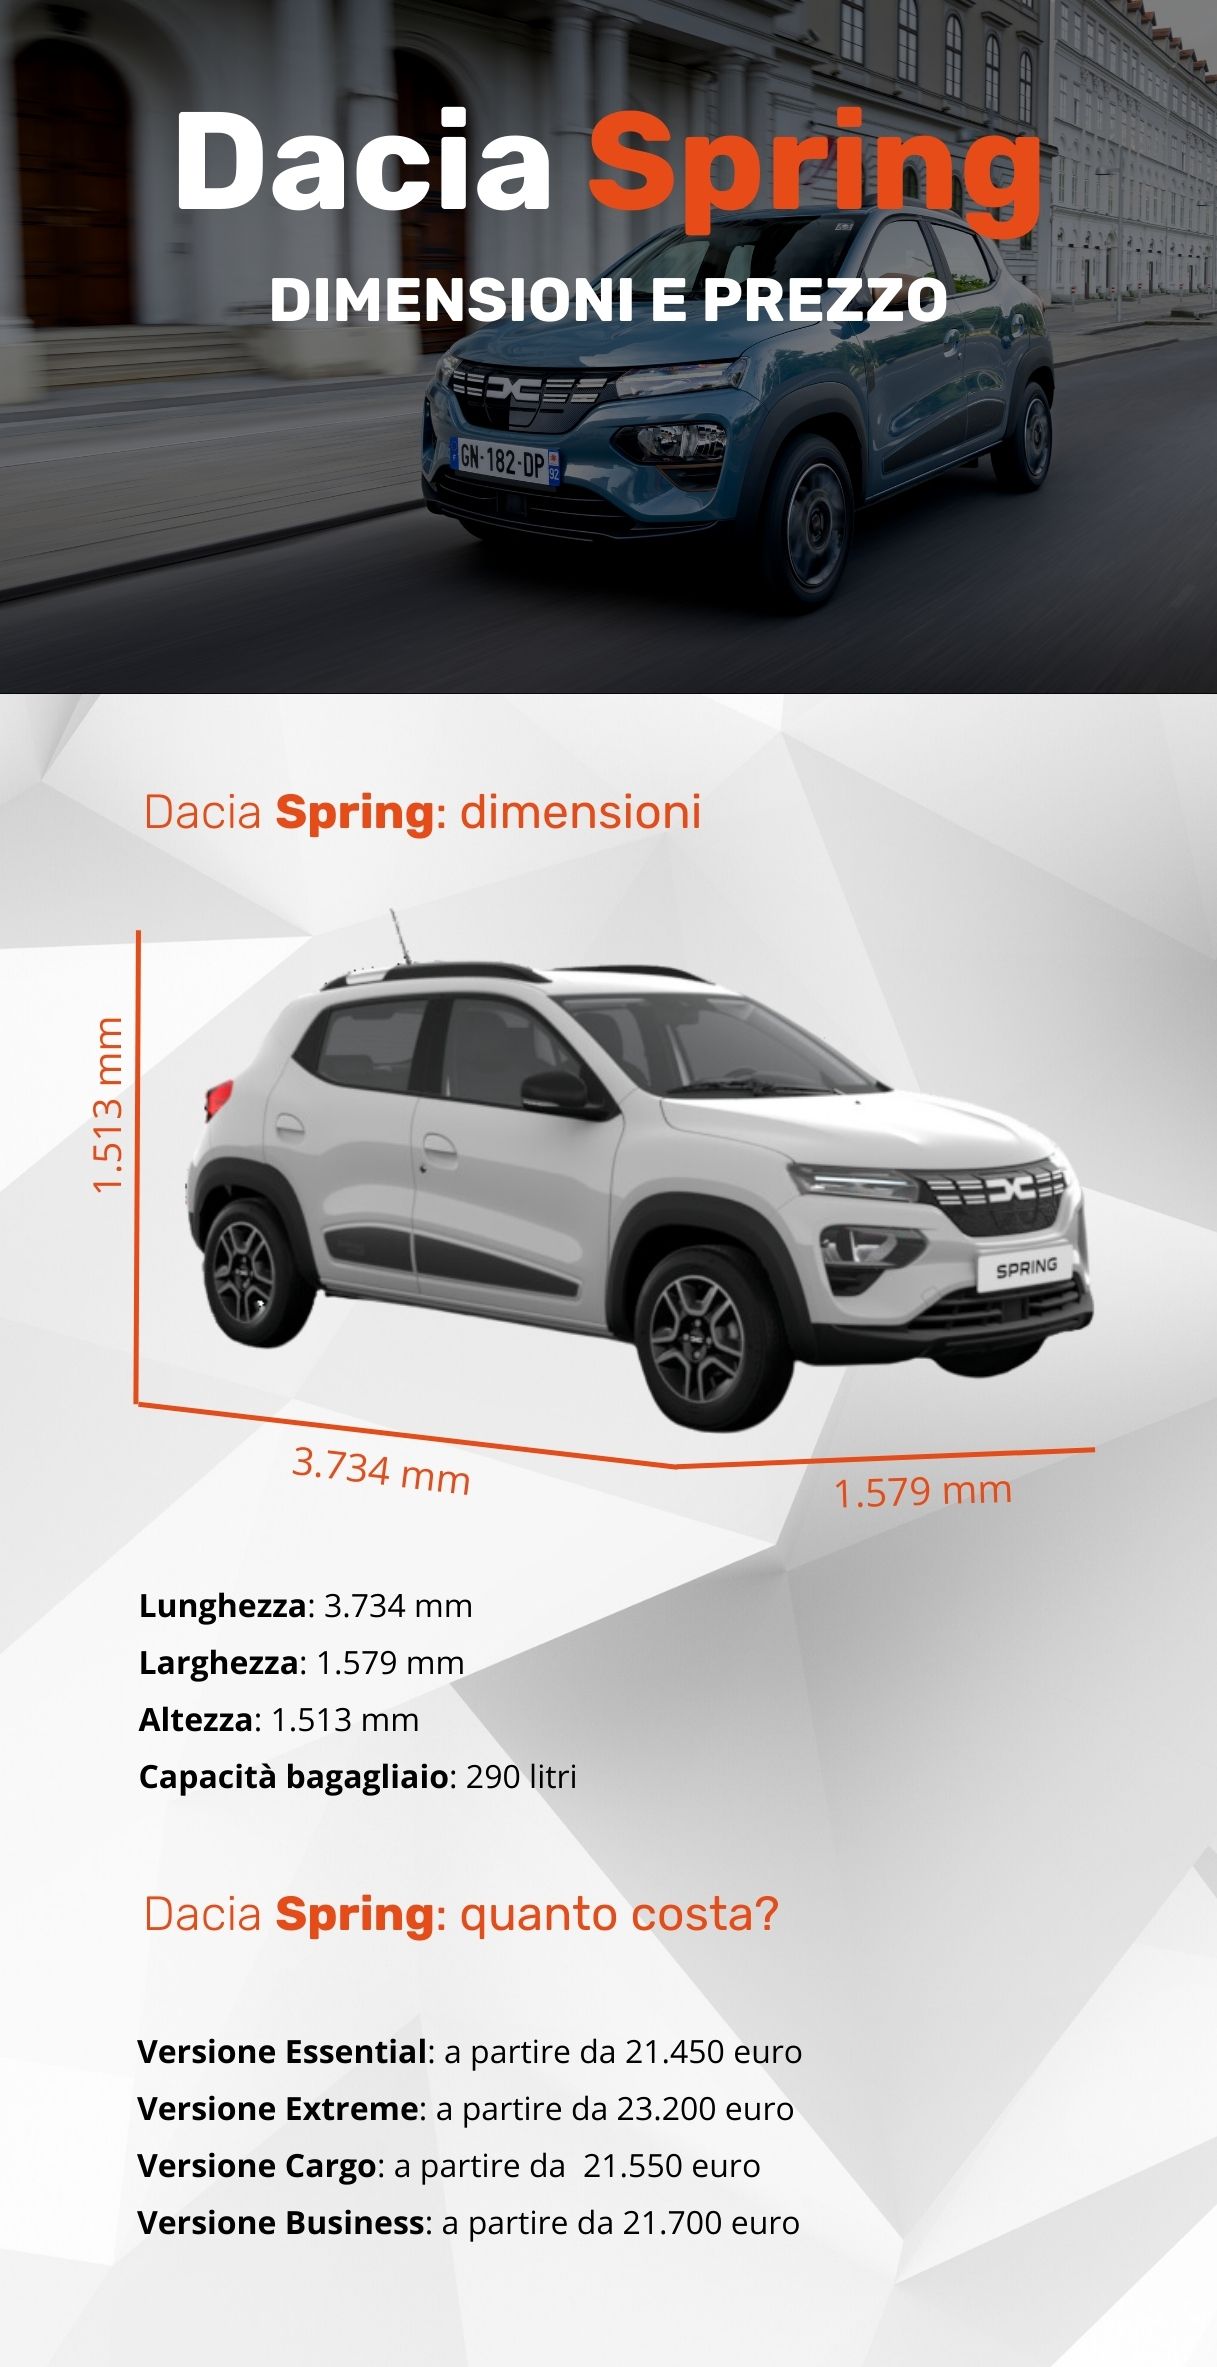 Dacia spring 